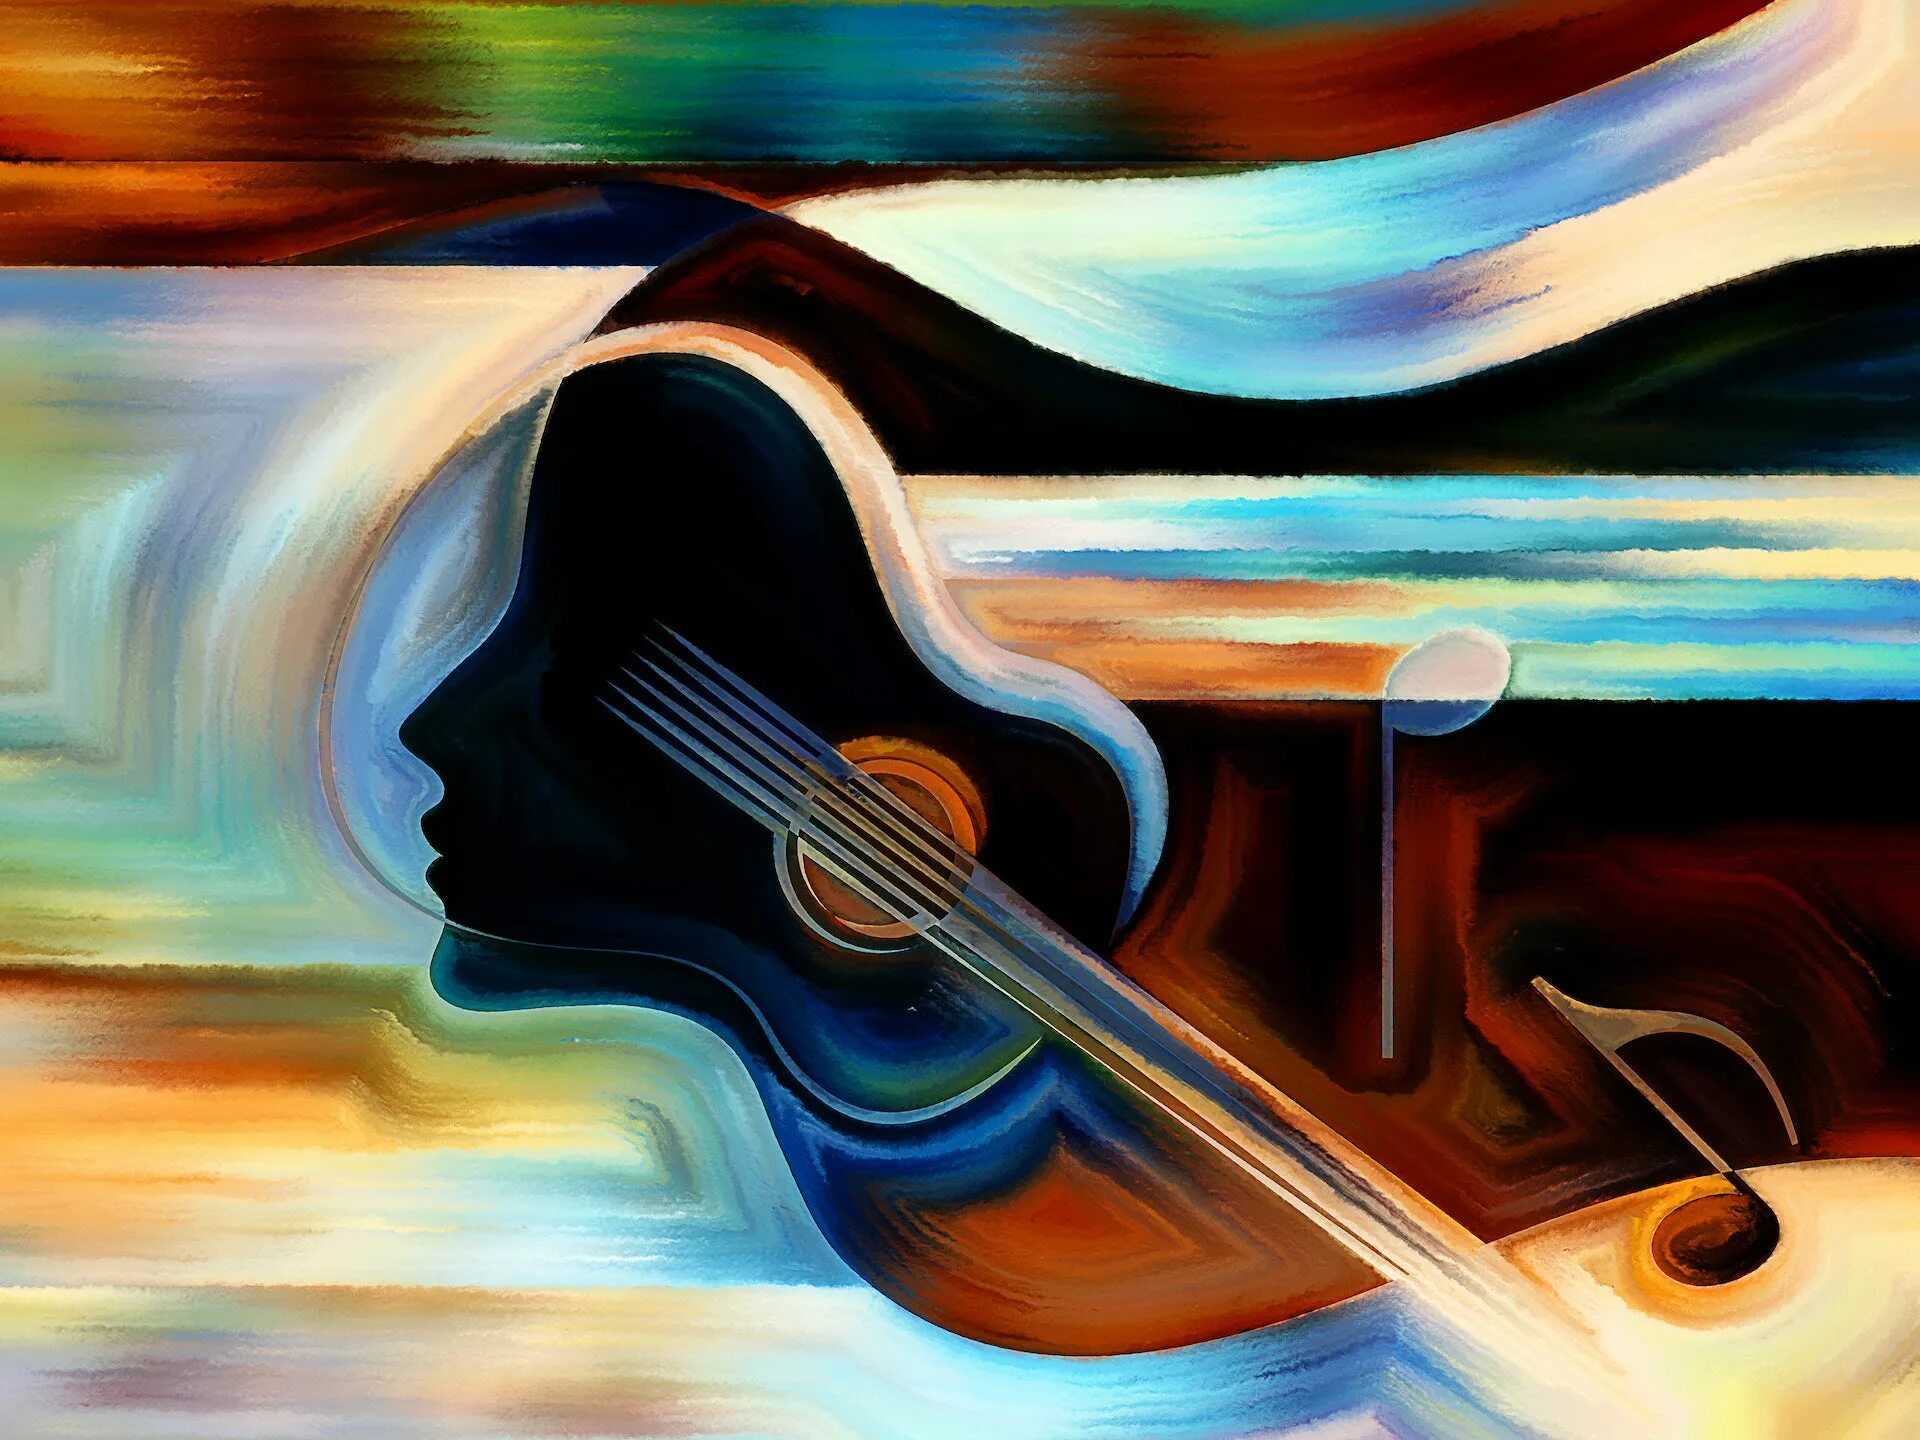 Music painting. Абстракция с музыкальными инструментами. Живопись музыкальные инструменты абстракция. Абстрактные музыкальные инструменты. Иллюстрация музыкальная абстракция.